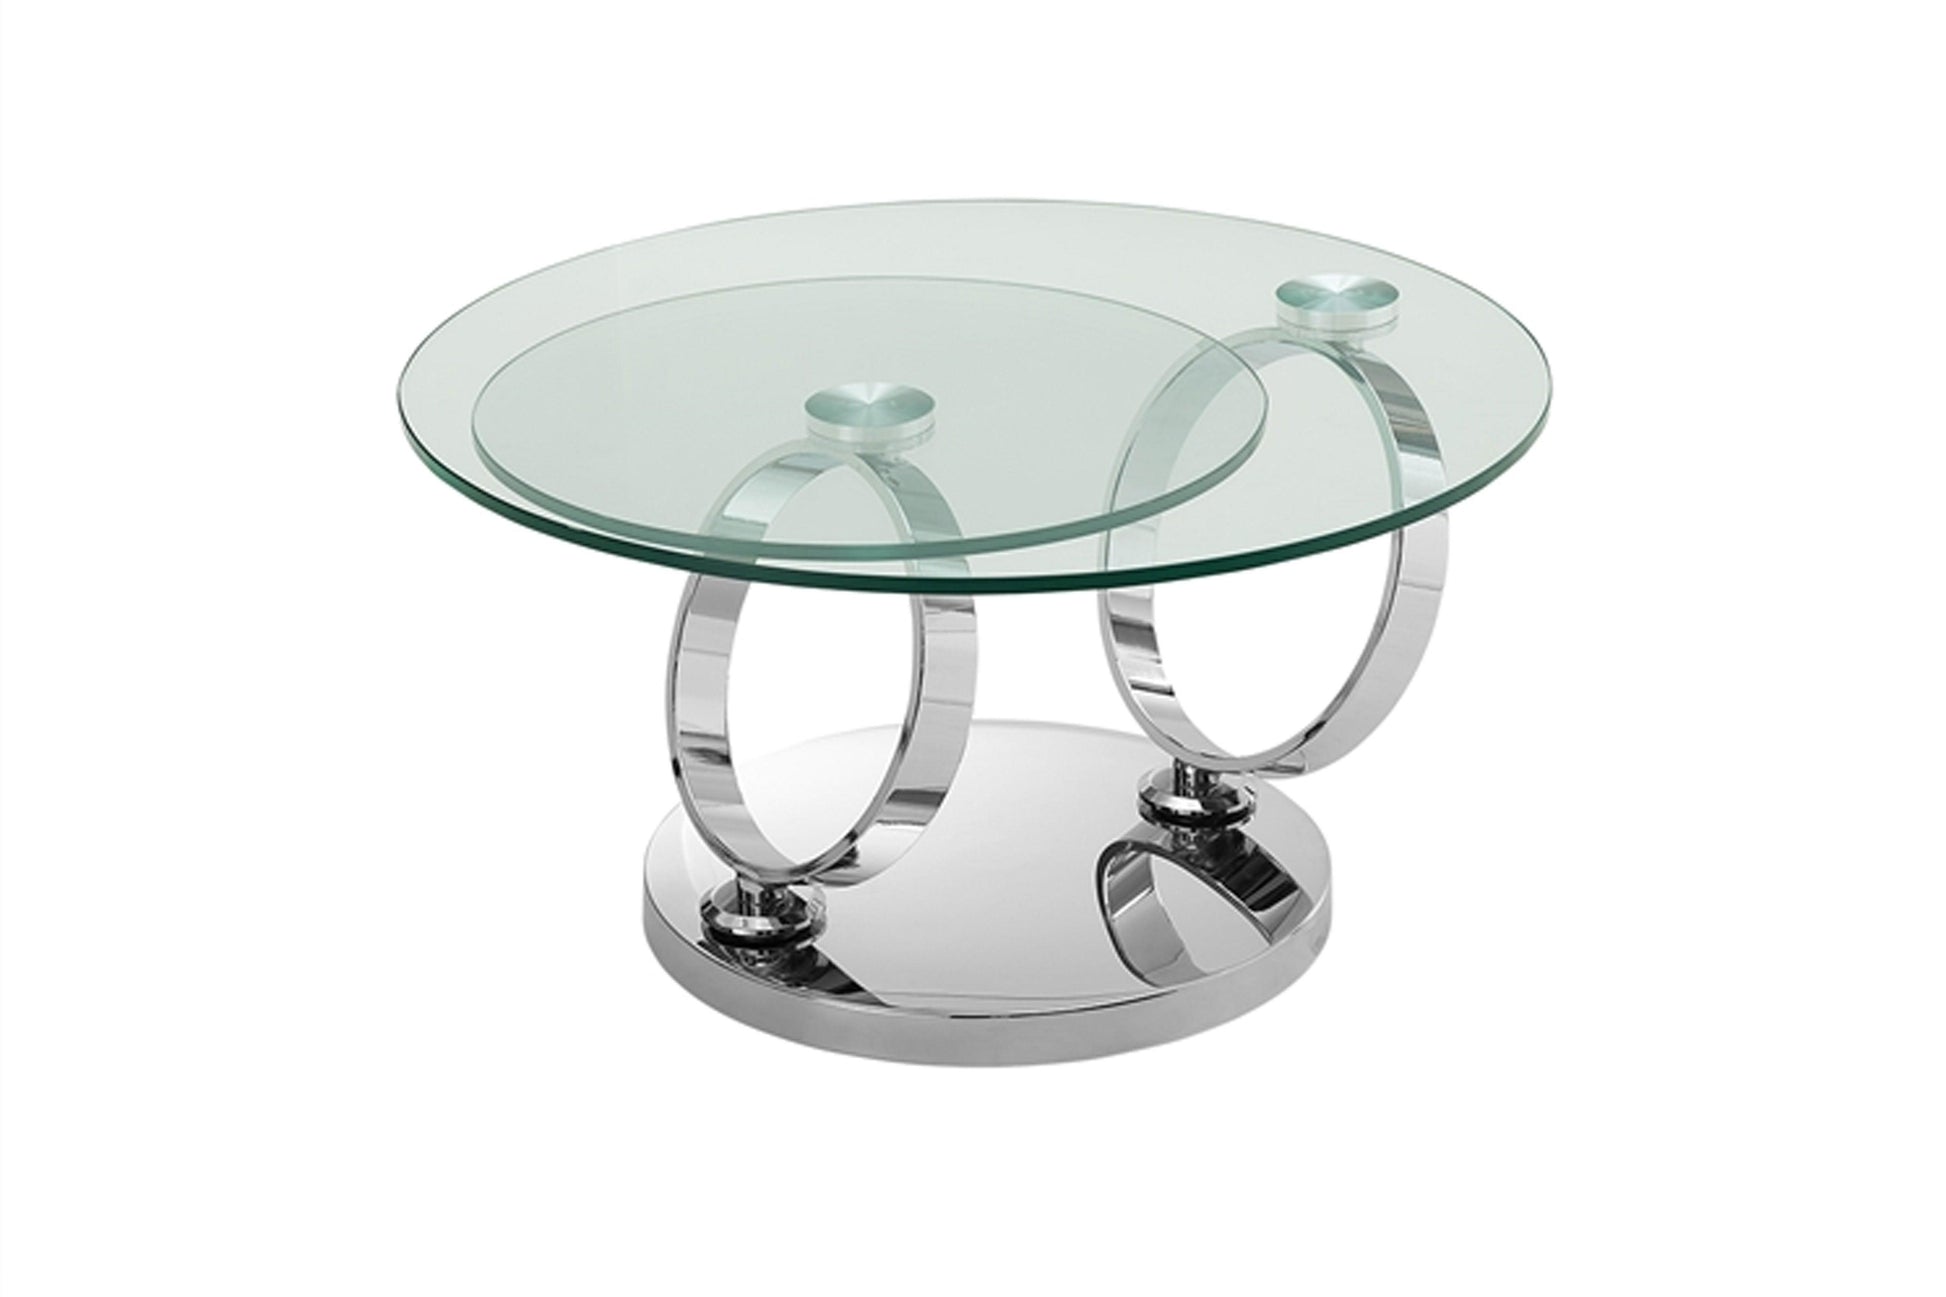 Satellite Coffee table Model CB-129 - Venini Furniture 